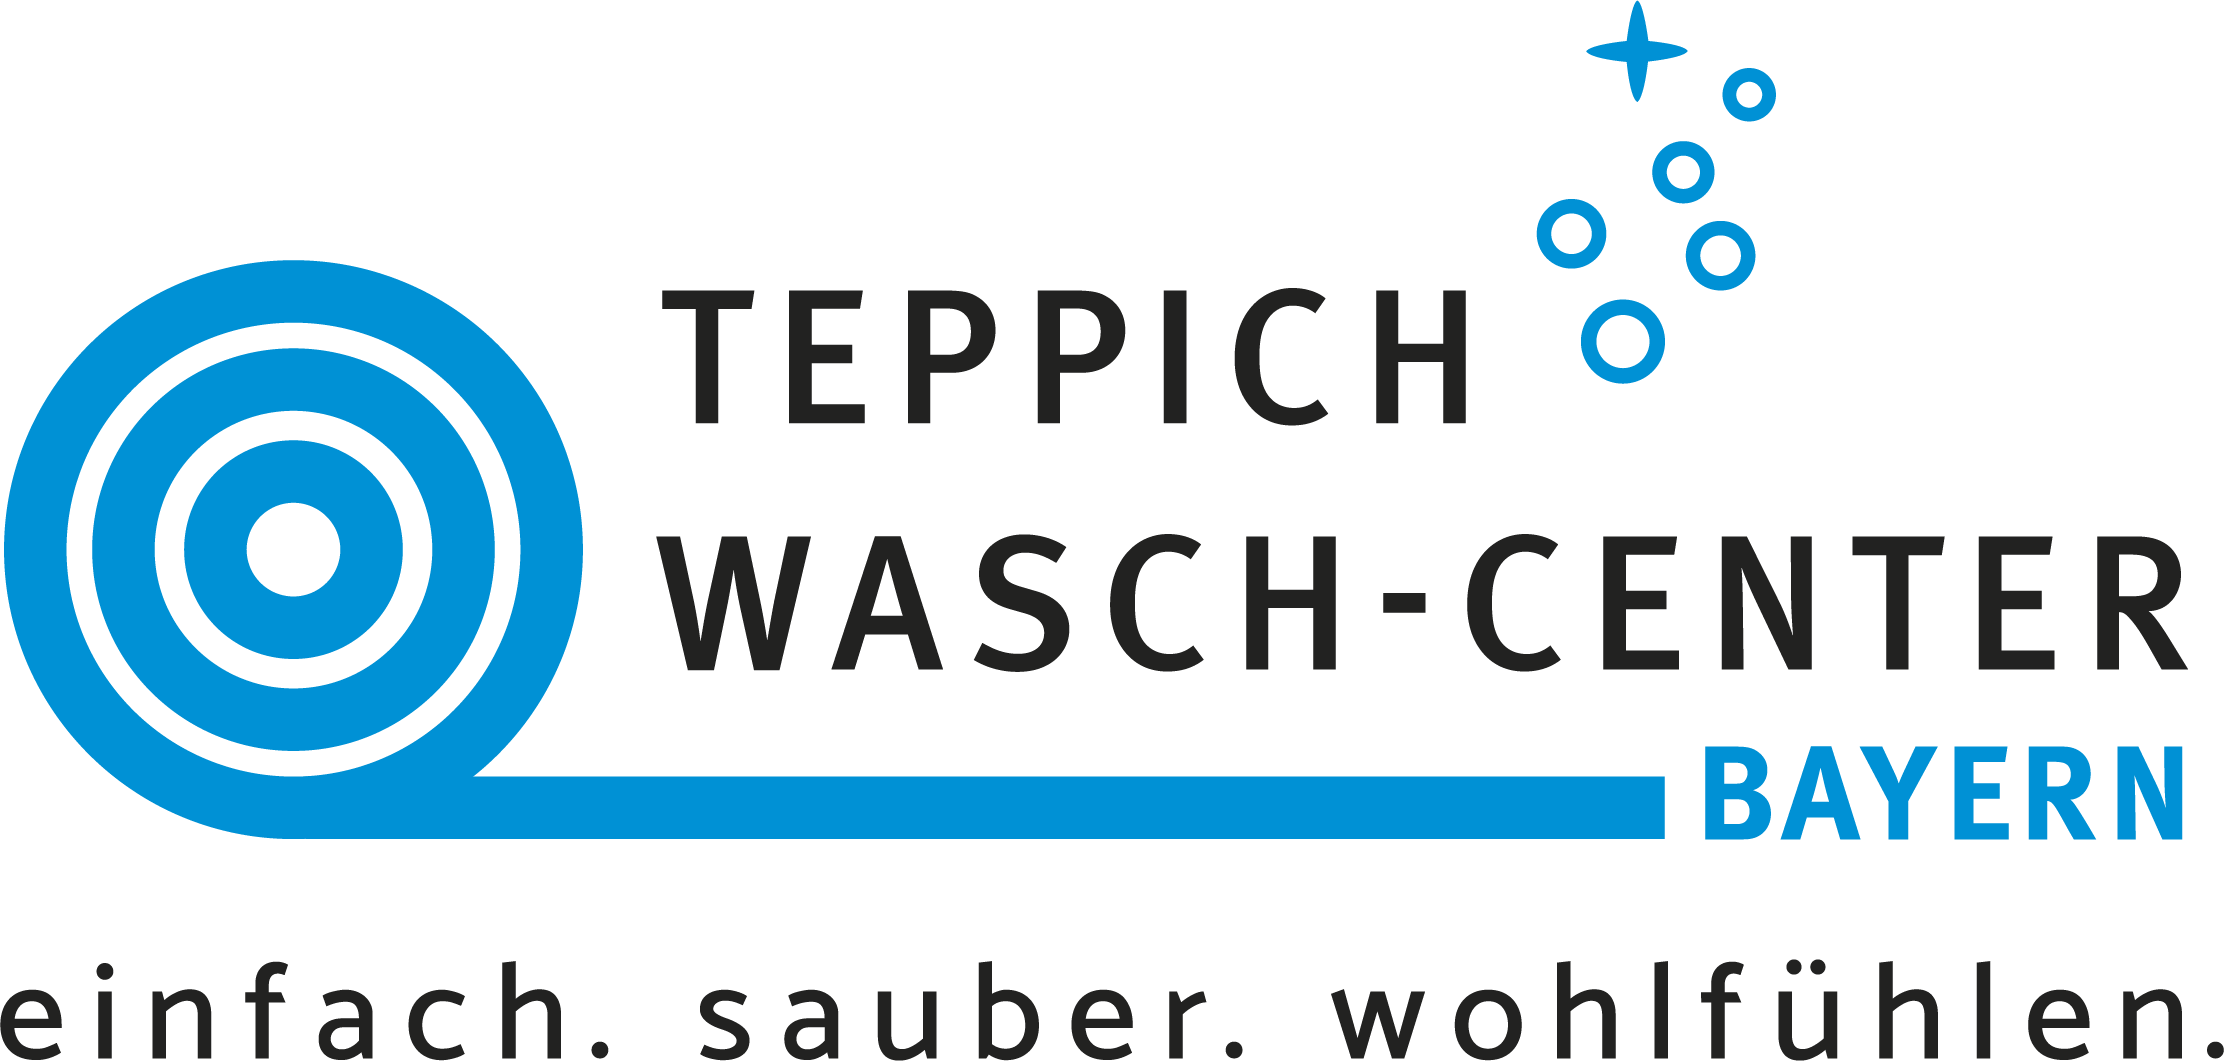 Teppichreinigung München Logo - Teppich Wasch-Center Bayern